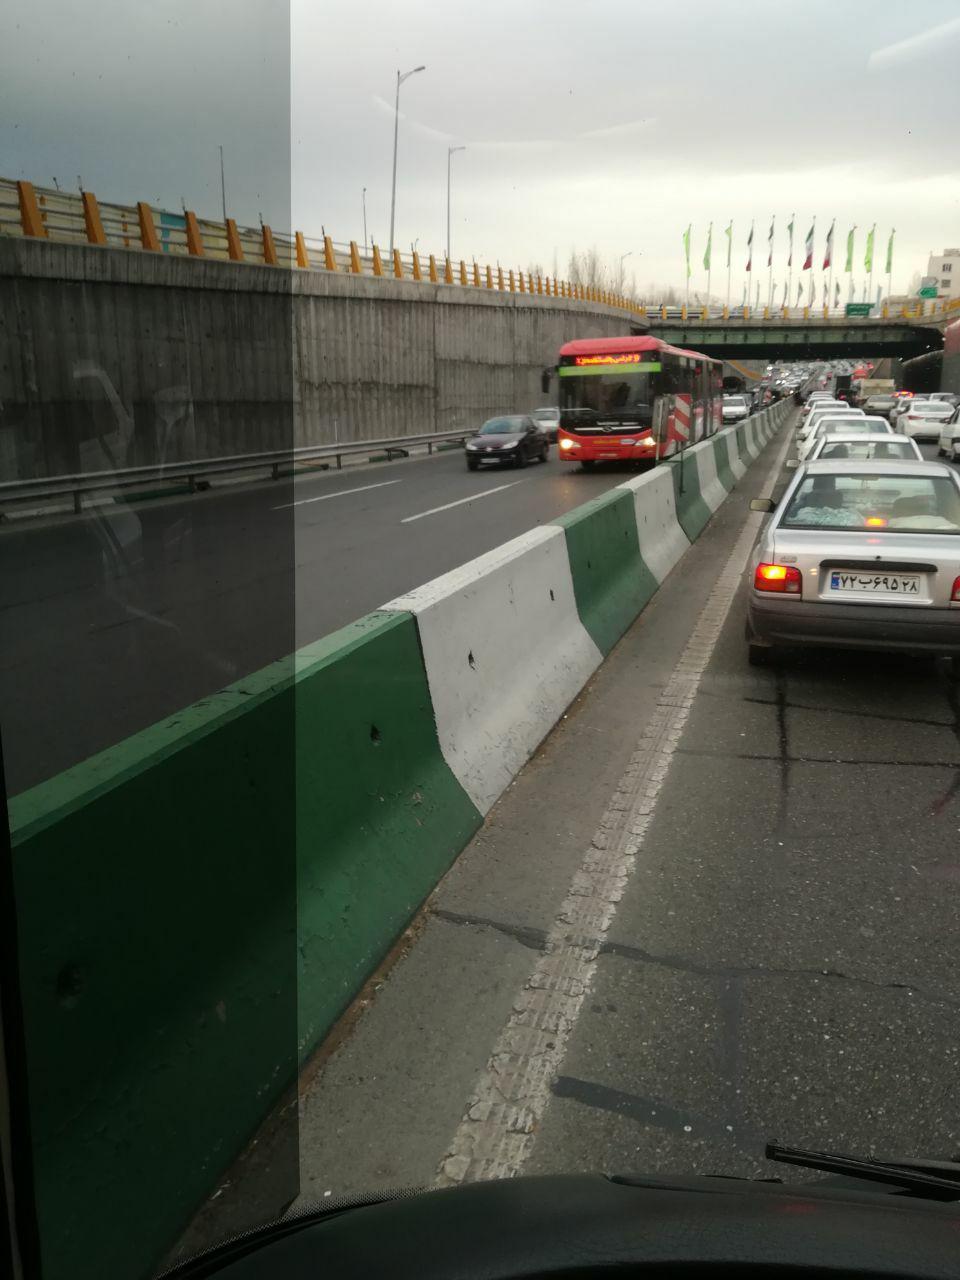 اعتراض چراغ روشنِ رانندگان شرکت واحد اتوبوسرانی تهران